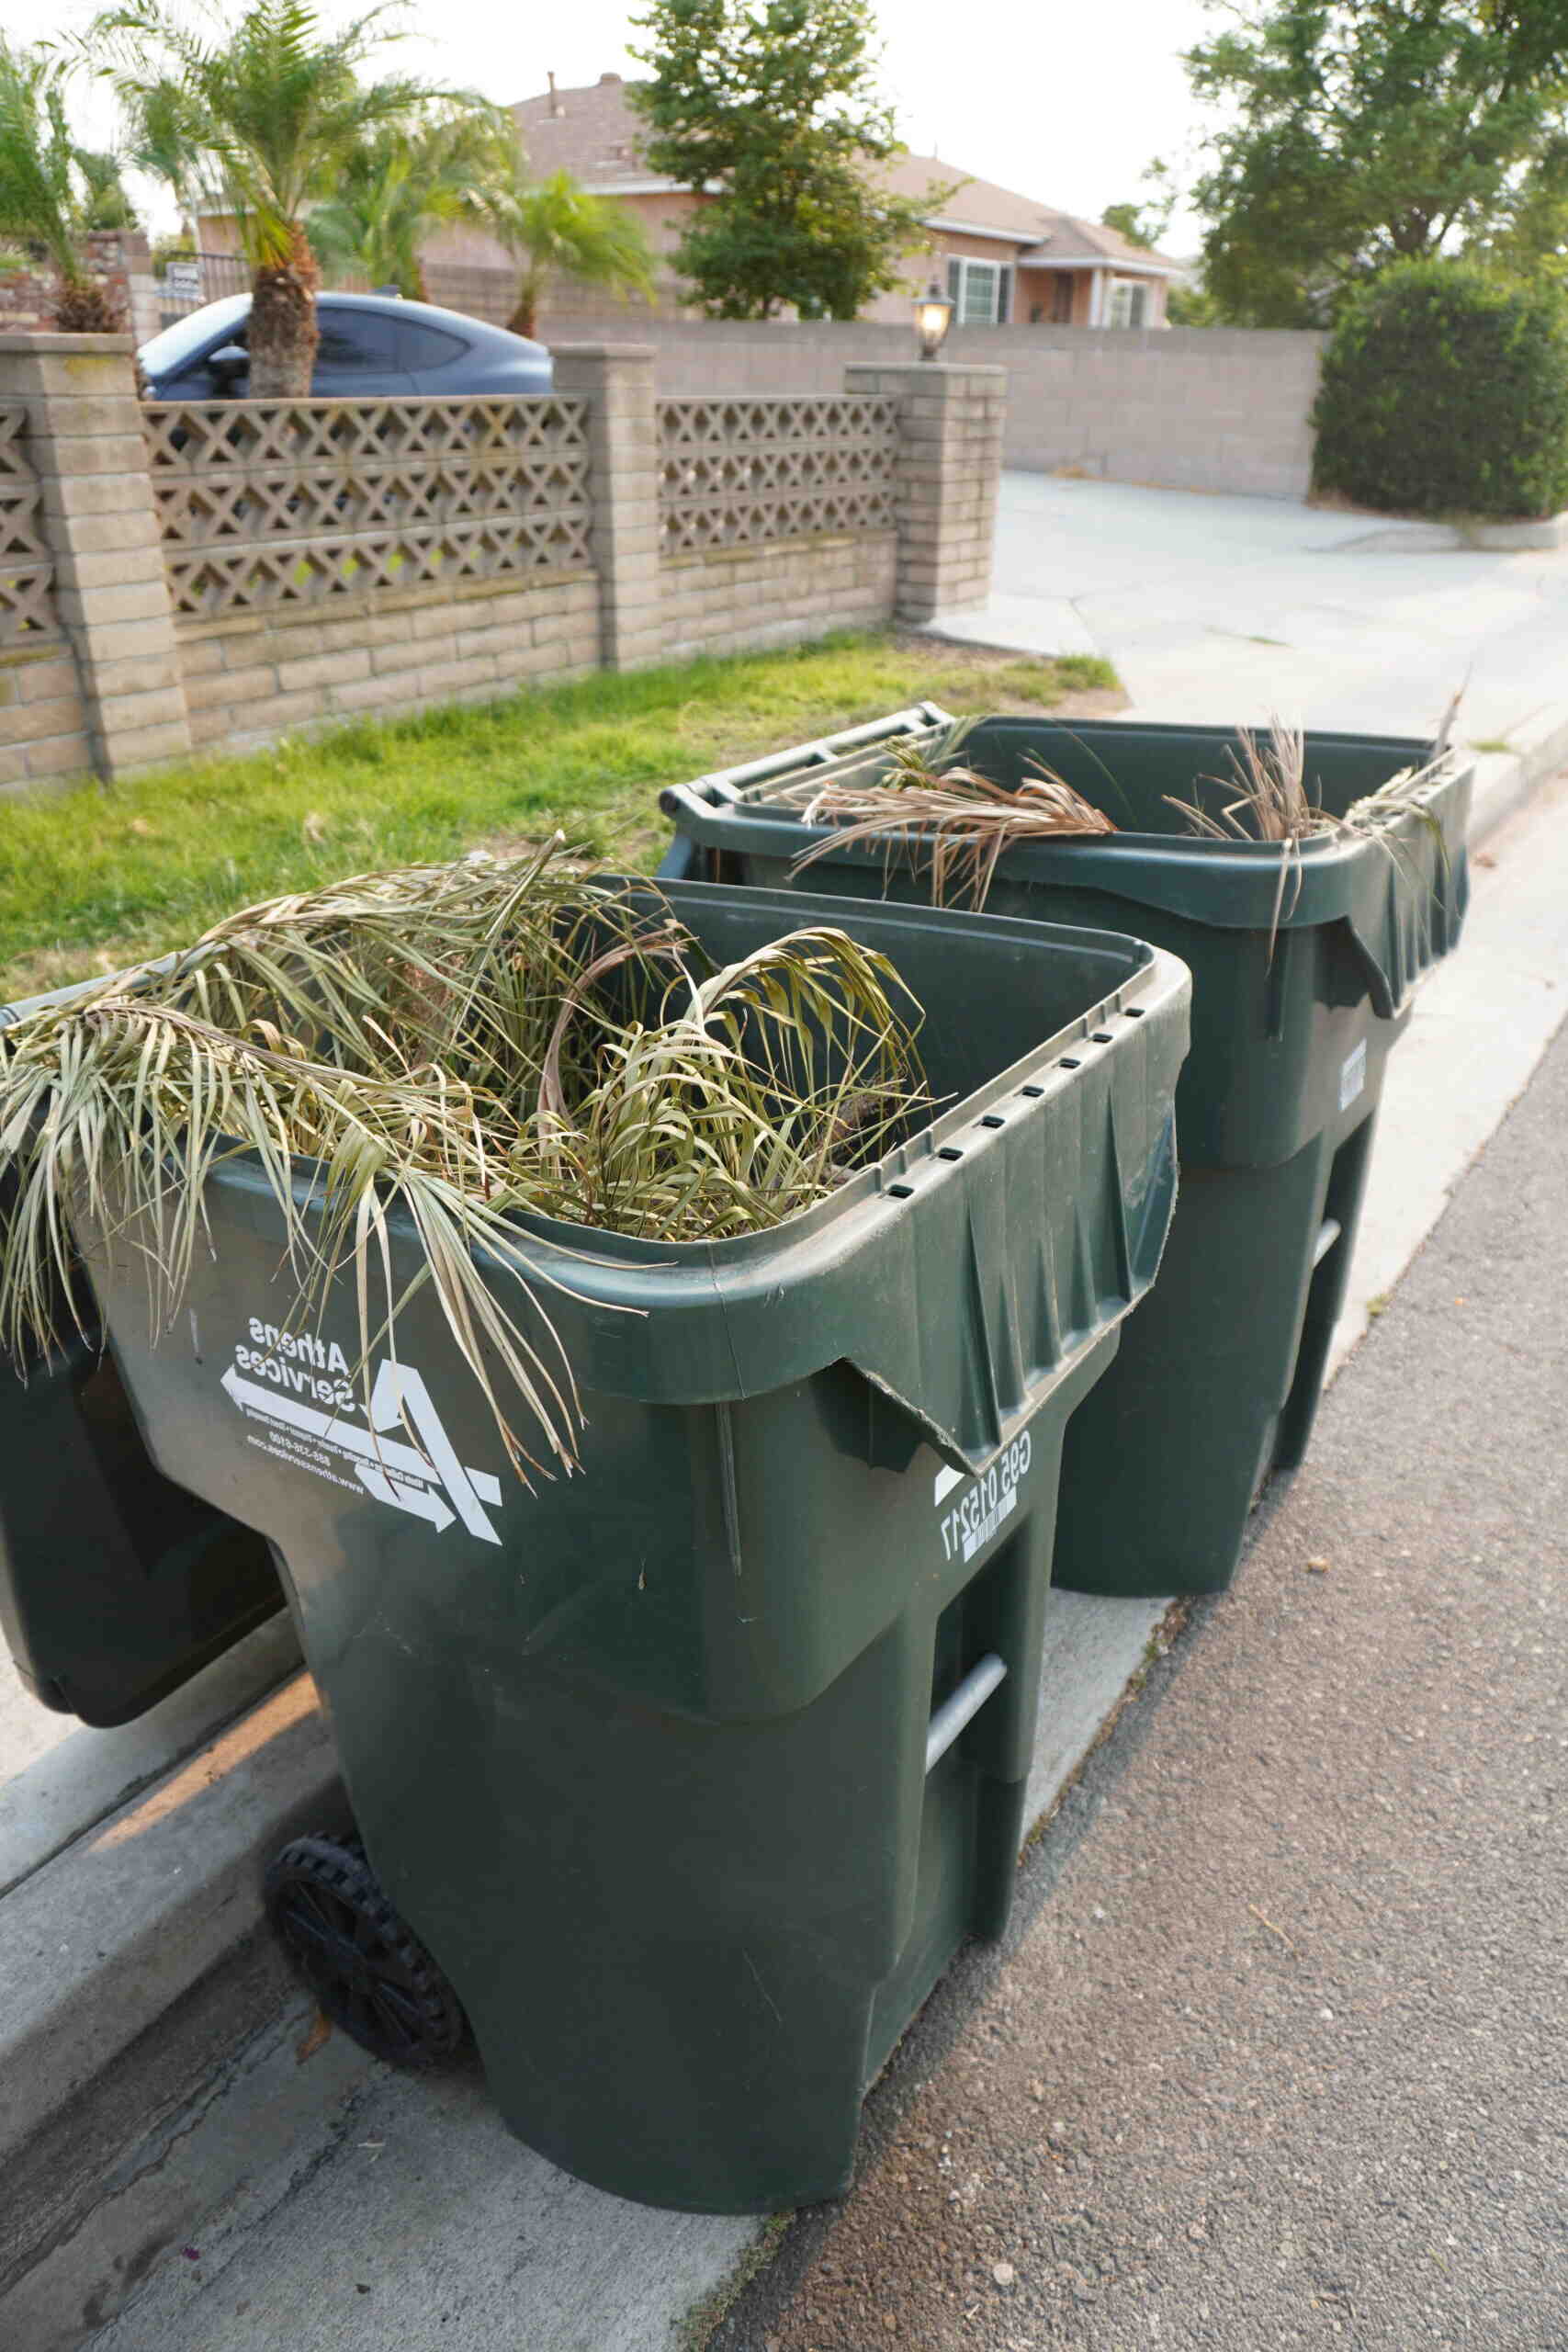 Comment obtenir une poubelle déchets verts ?